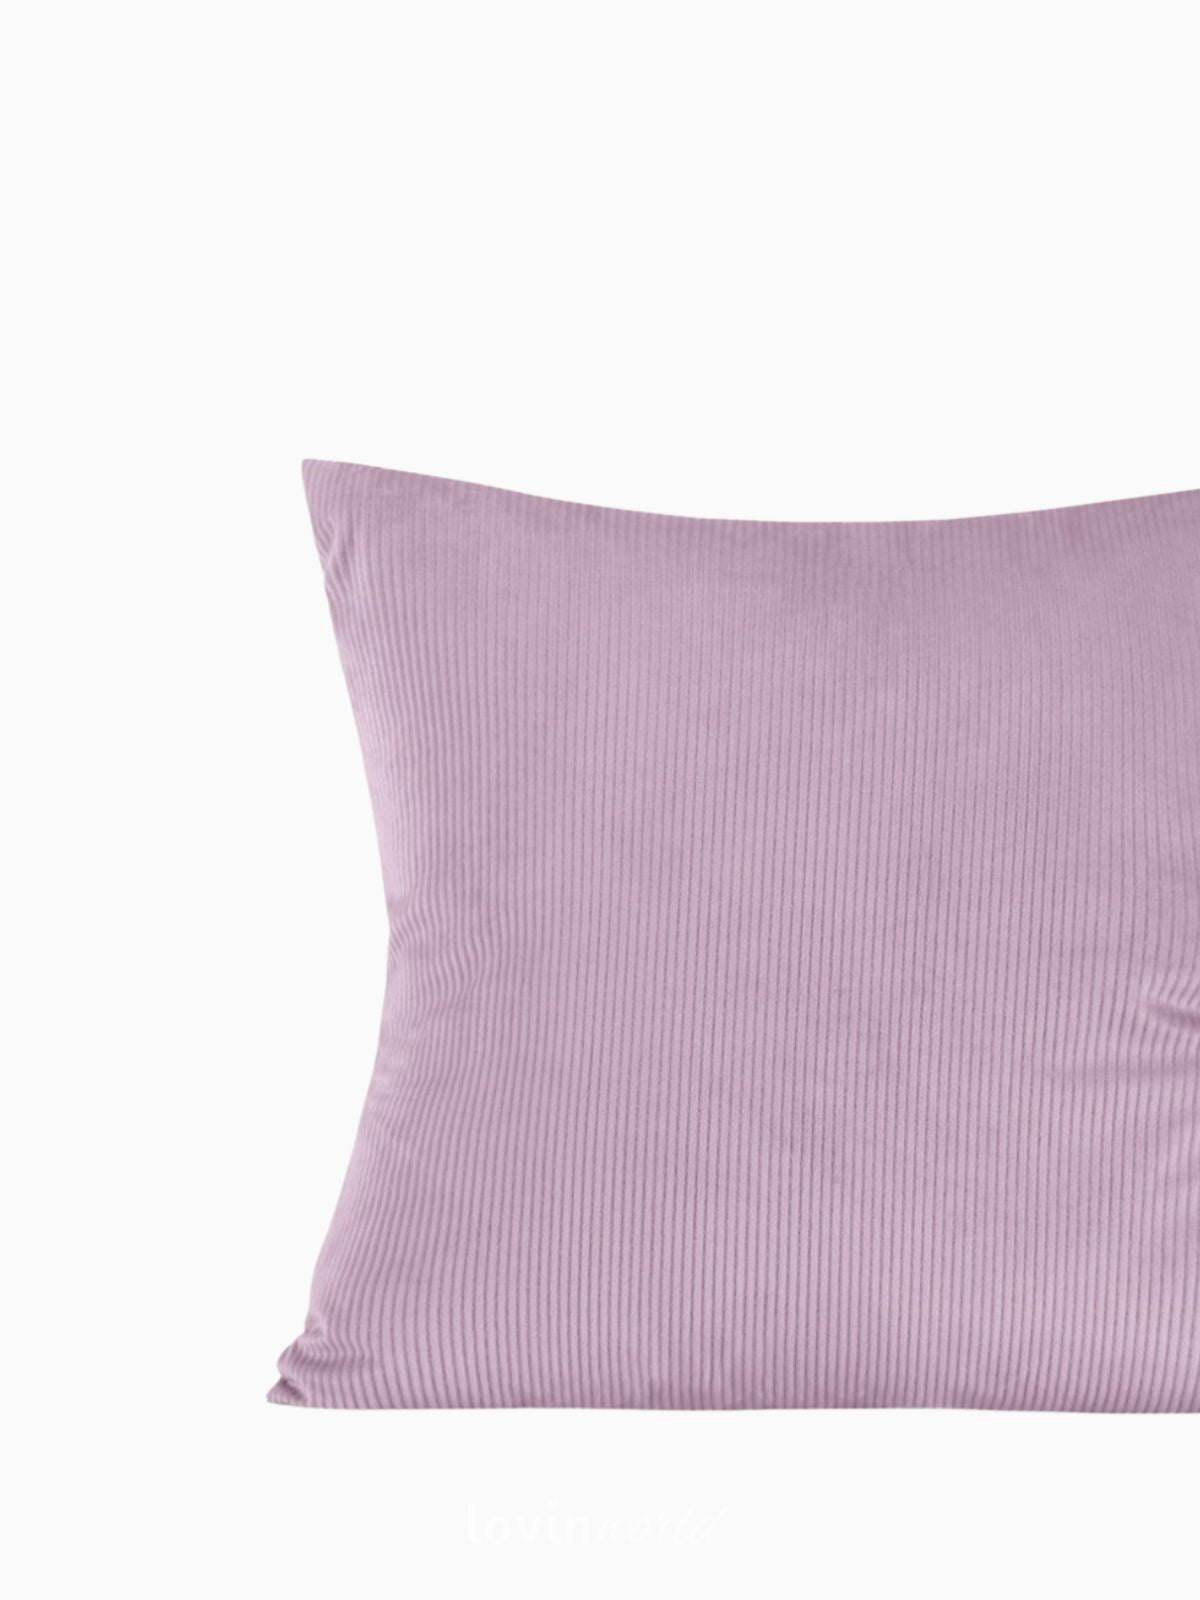 Cuscino decorativo in velluto Duffy, colore rosa 45x45 cm.-4